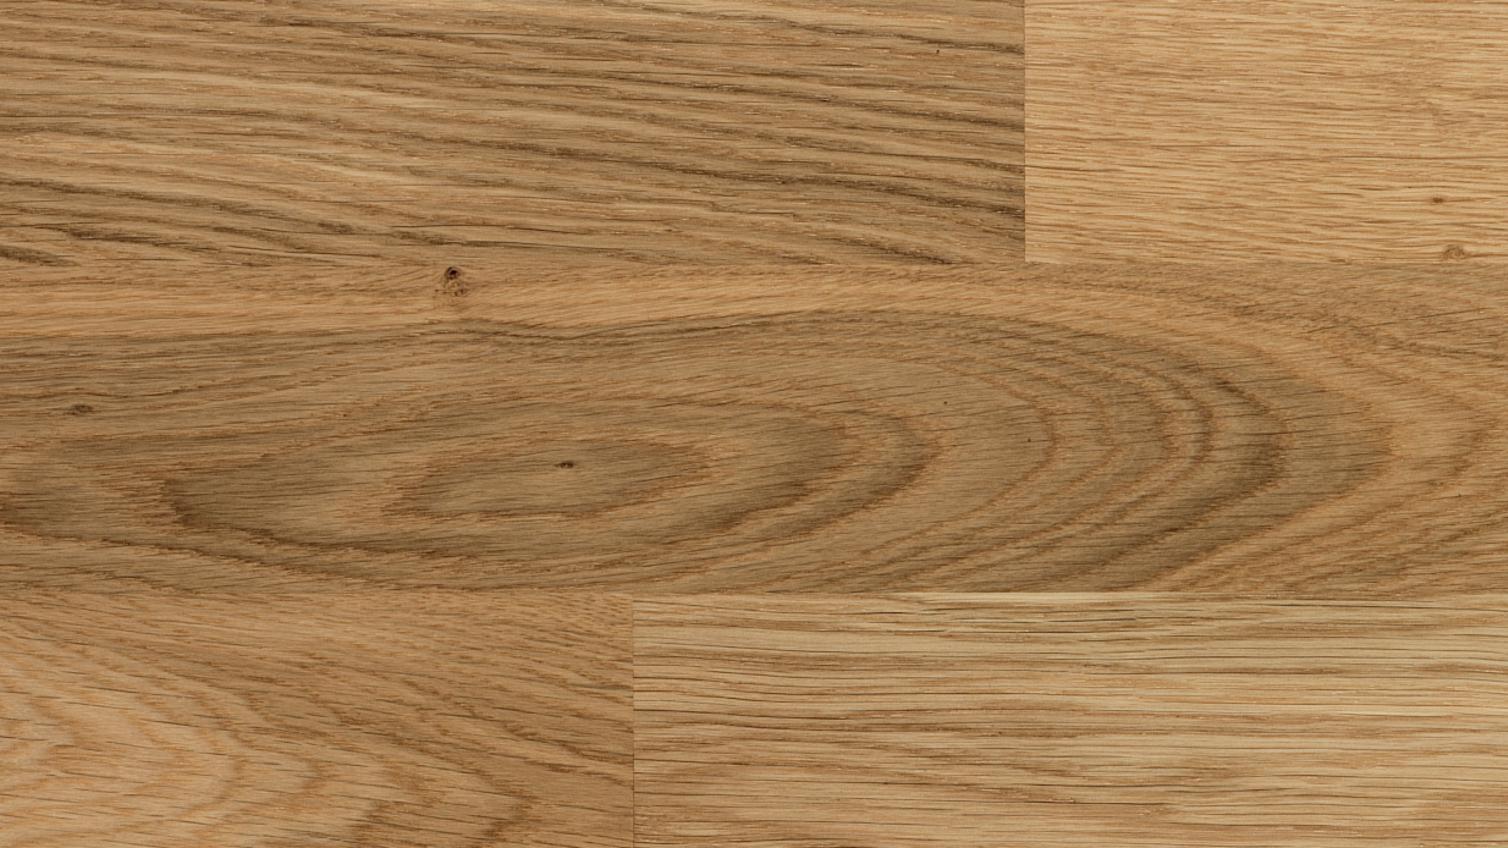 Howdens 3 Strip Wood Grain Effect Oak Engineered Flooring 3.18m² Pack